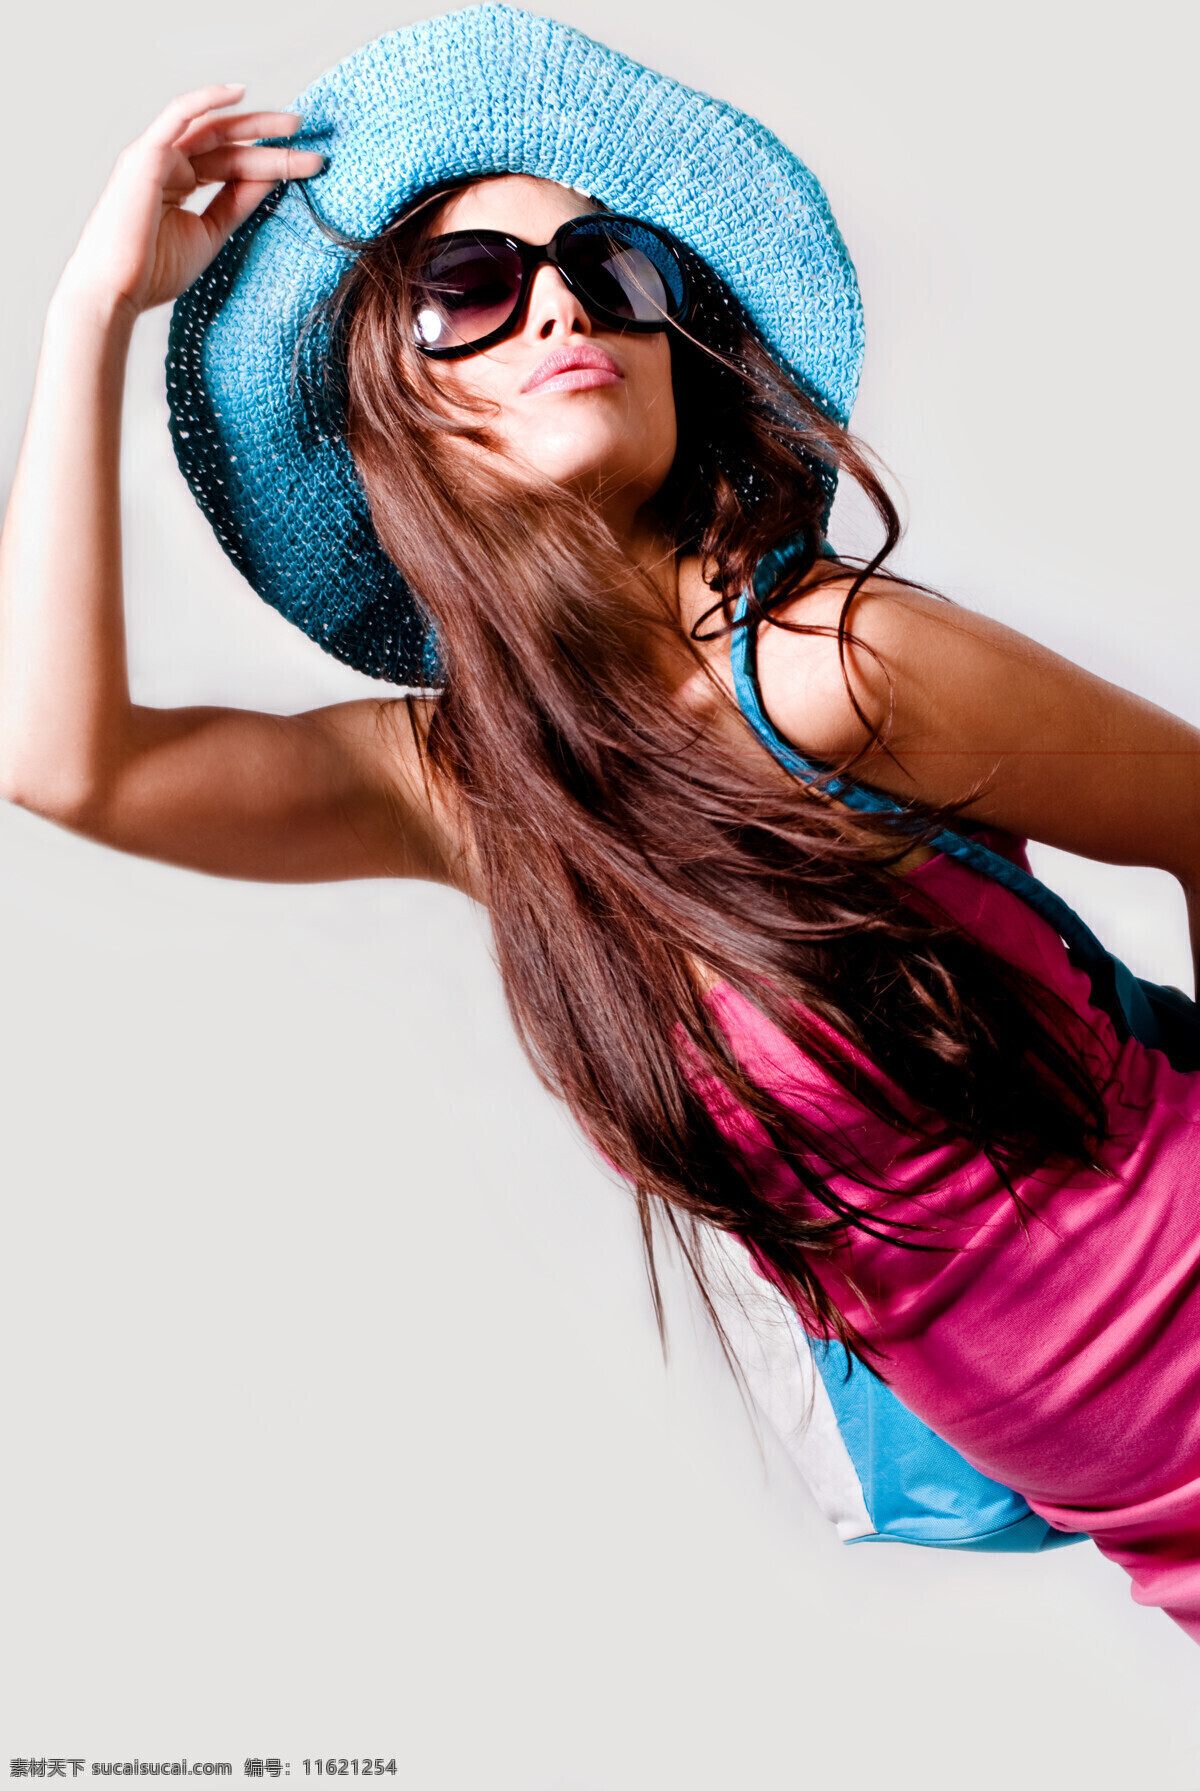 戴 墨镜 外国 女人 美女 外国美女 太阳帽 凉帽 人物摄影 人物写真 美女图片 人物图片